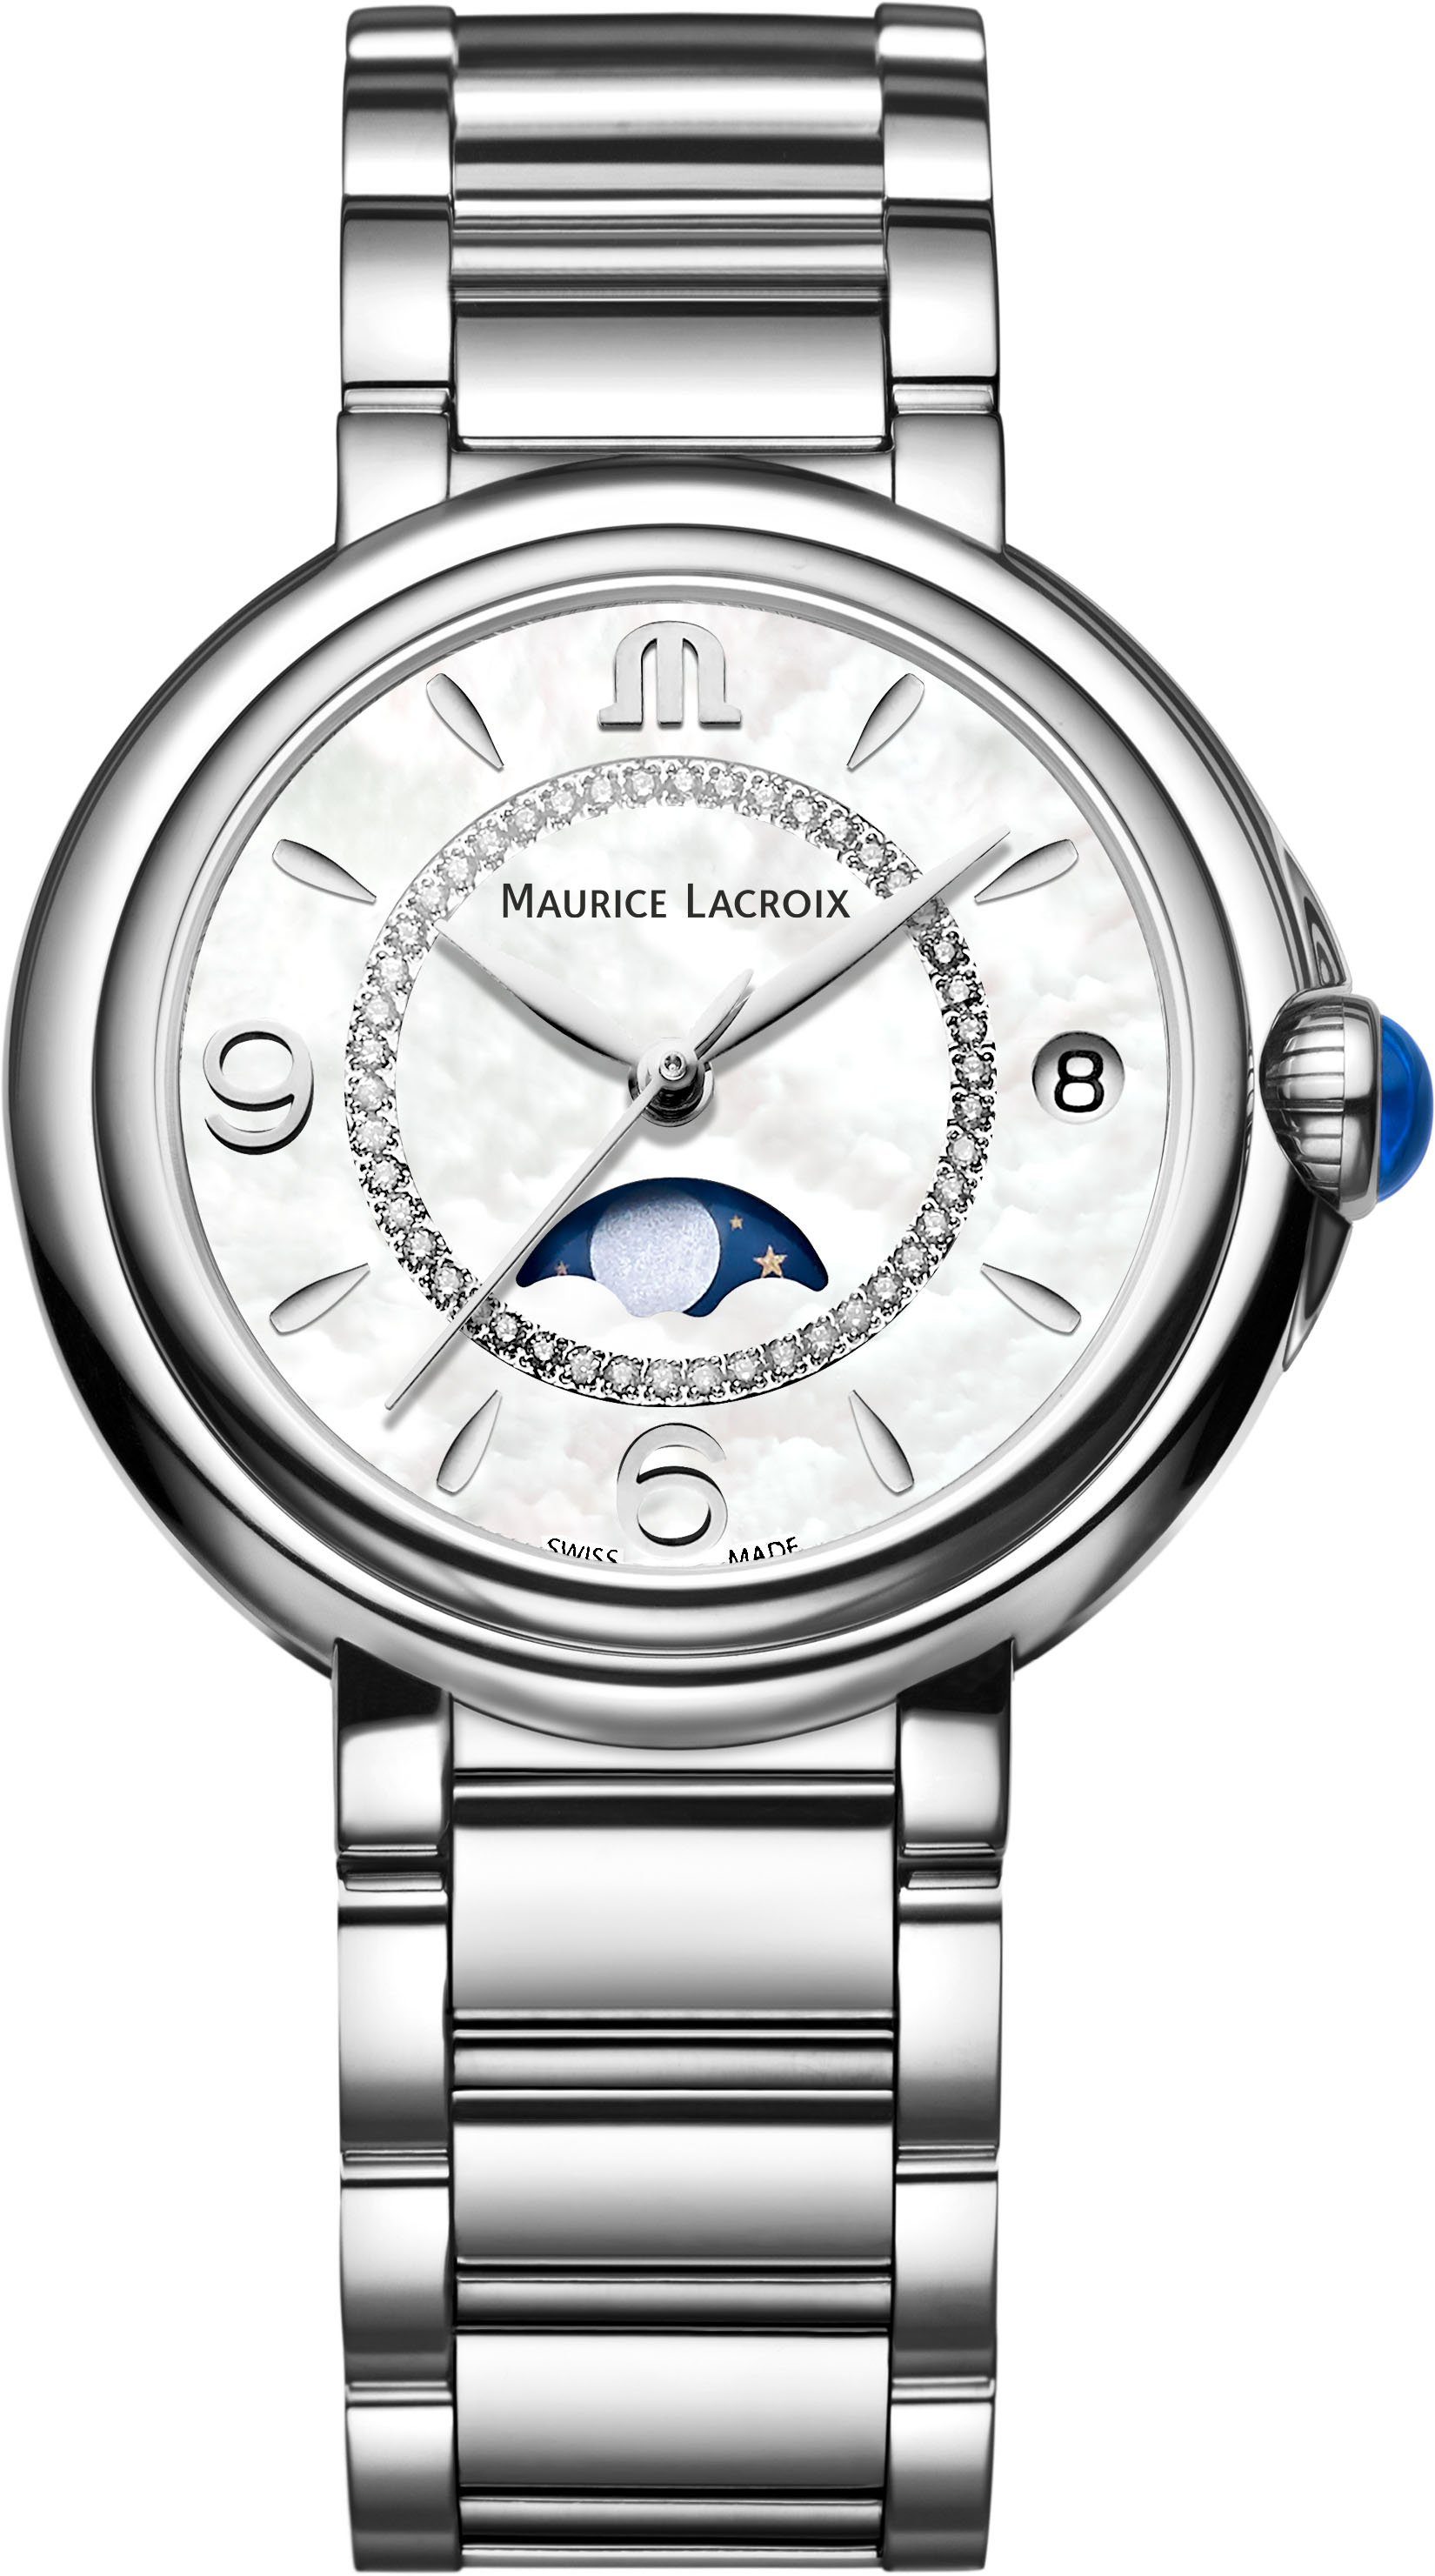 MAURICE LACROIX Schweizer Uhr FIABA MOONPHASE, FA1084-SS002-170-1, Diamanten, Mondphase | Schweizer Uhren